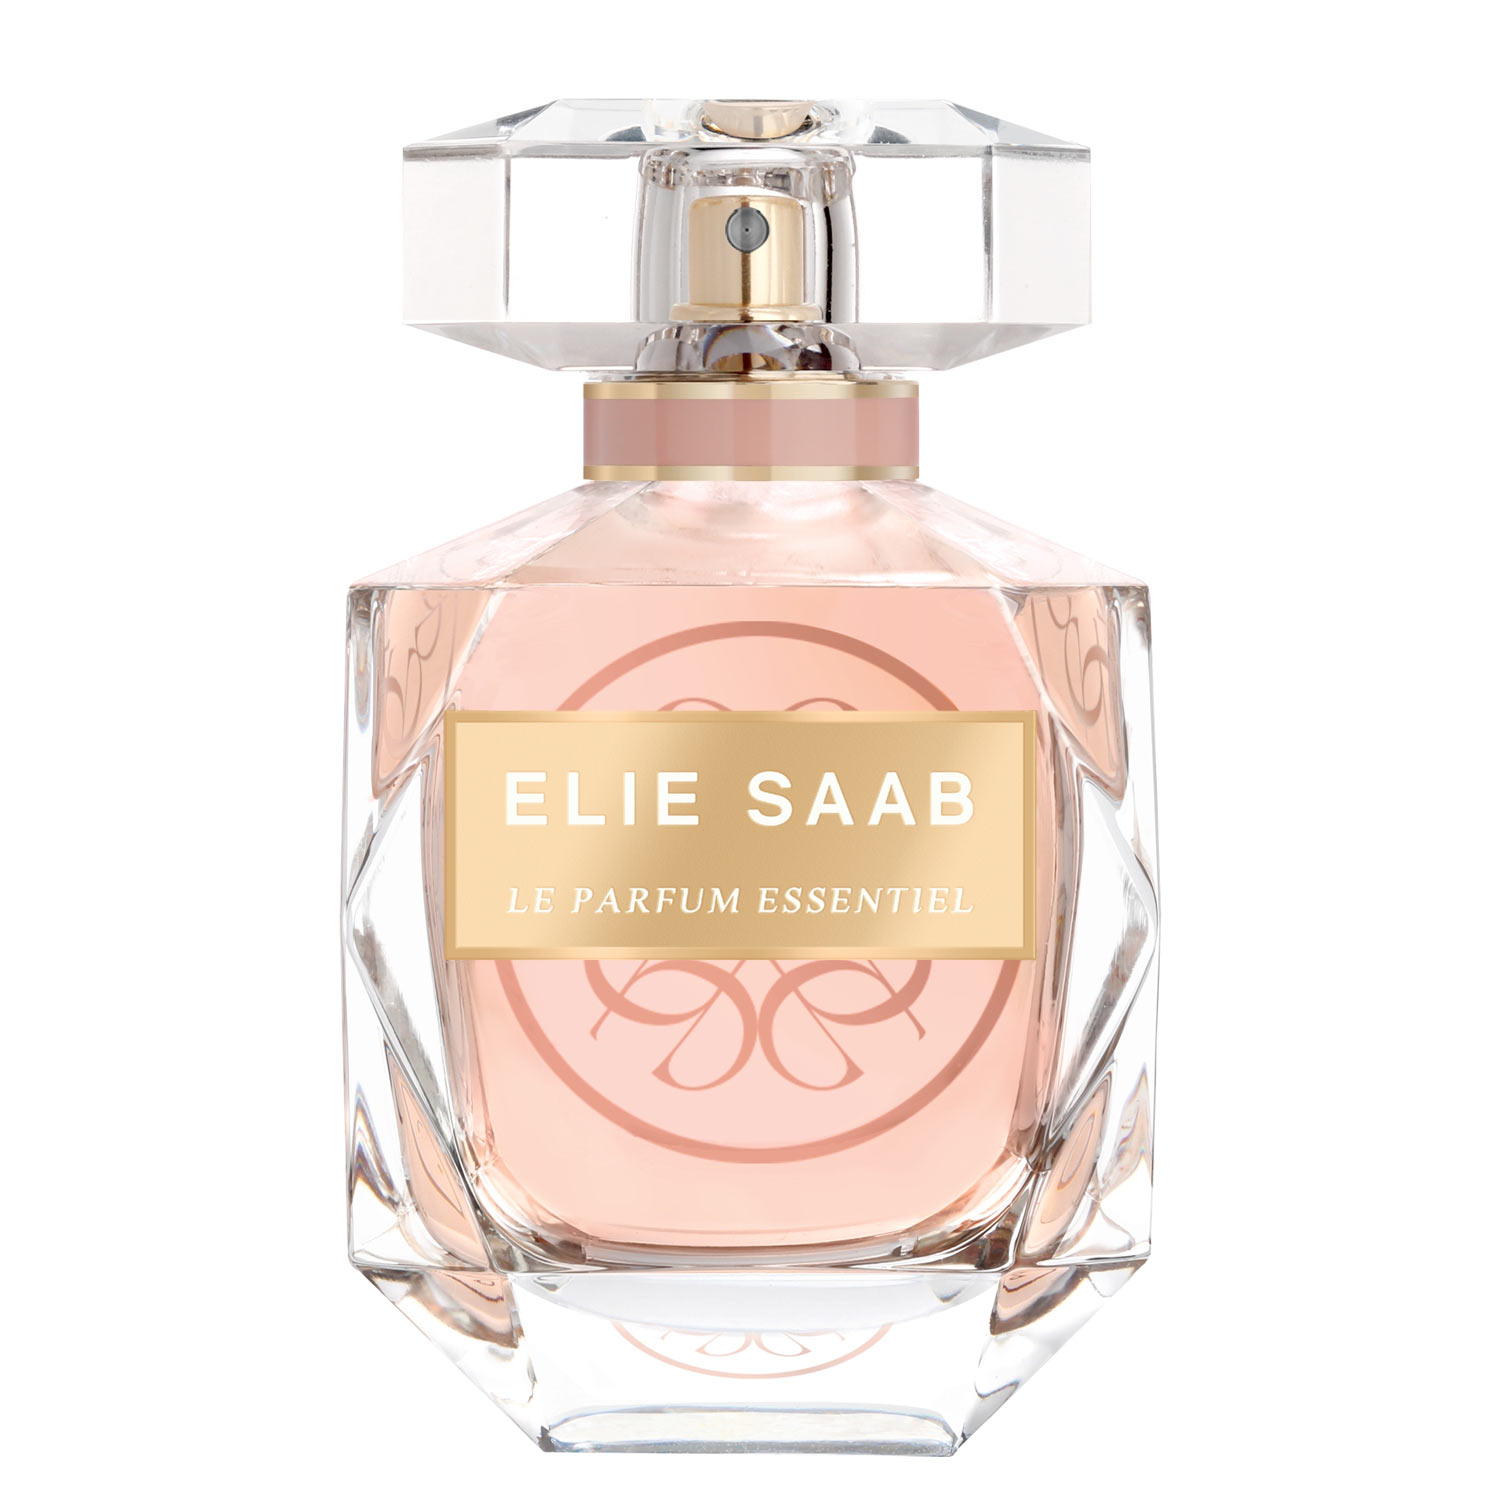 Elie-Saab-Le-Parfum-Essentiel-Elie-Saab